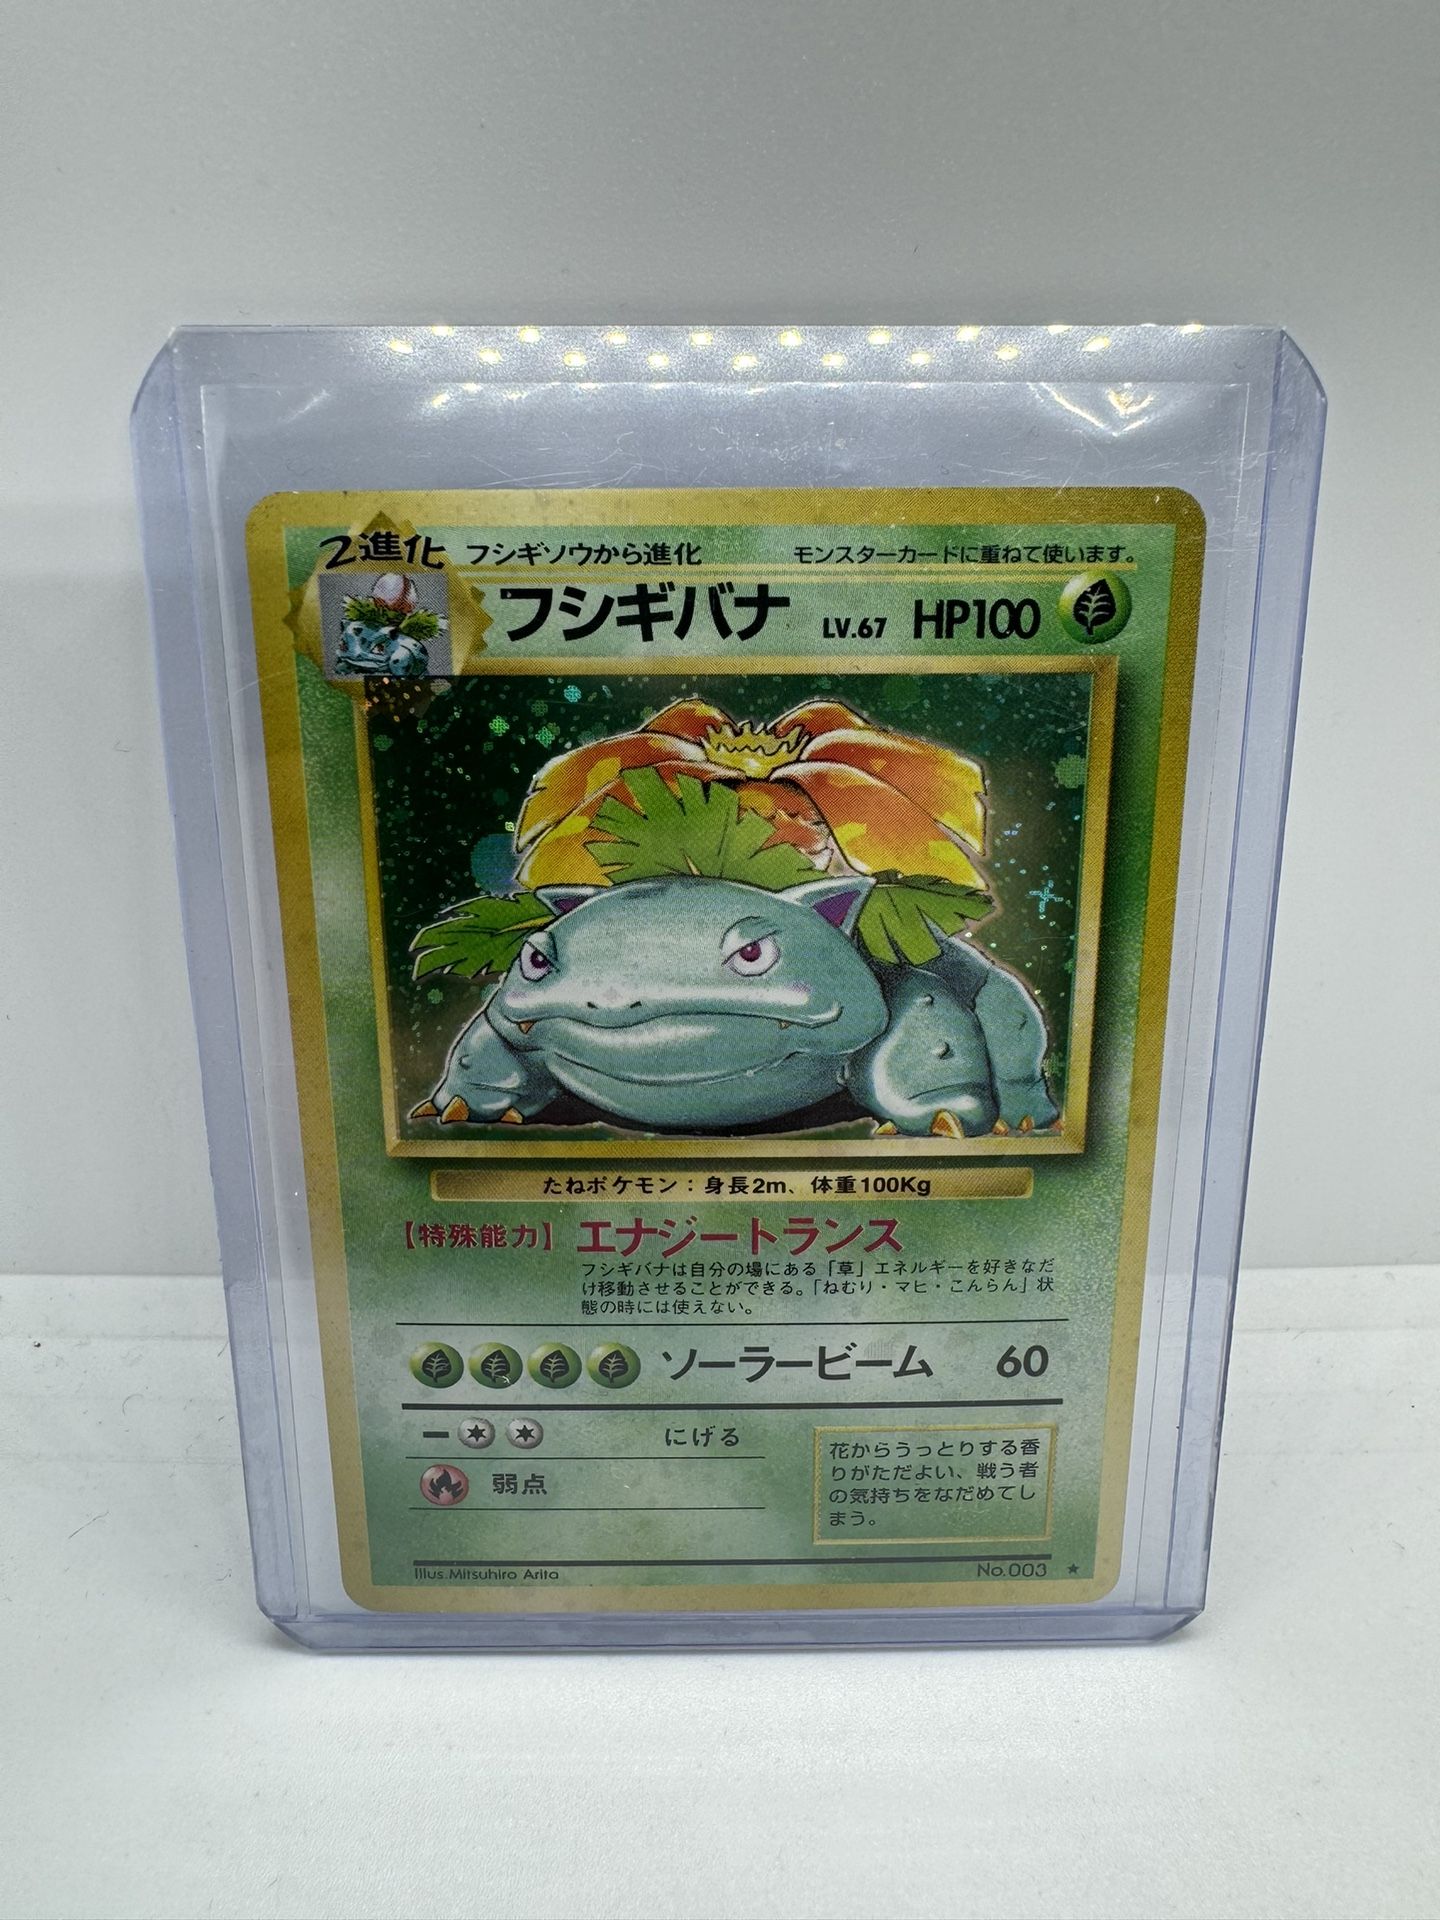  Venusaur Japanese Holographic Pokémon Card